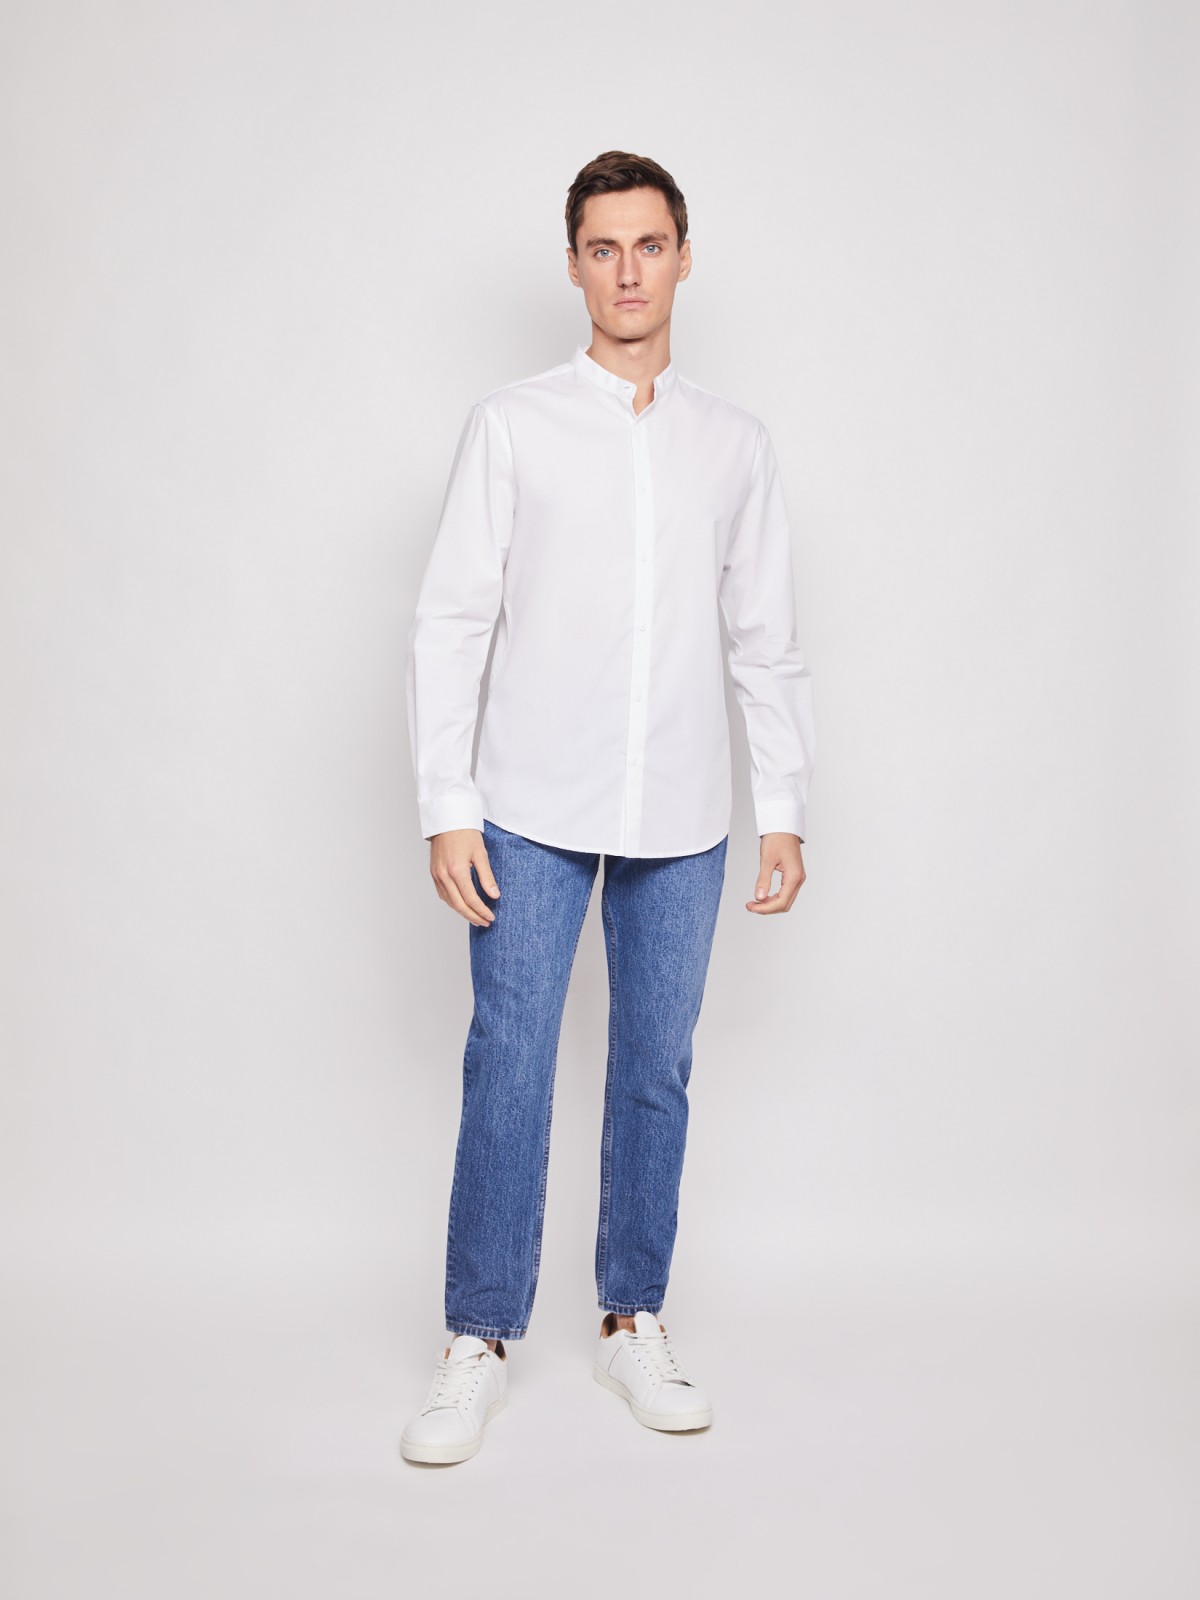 Рубашка с воротником-стойкой zolla 212112159012, цвет белый, размер S - фото 3